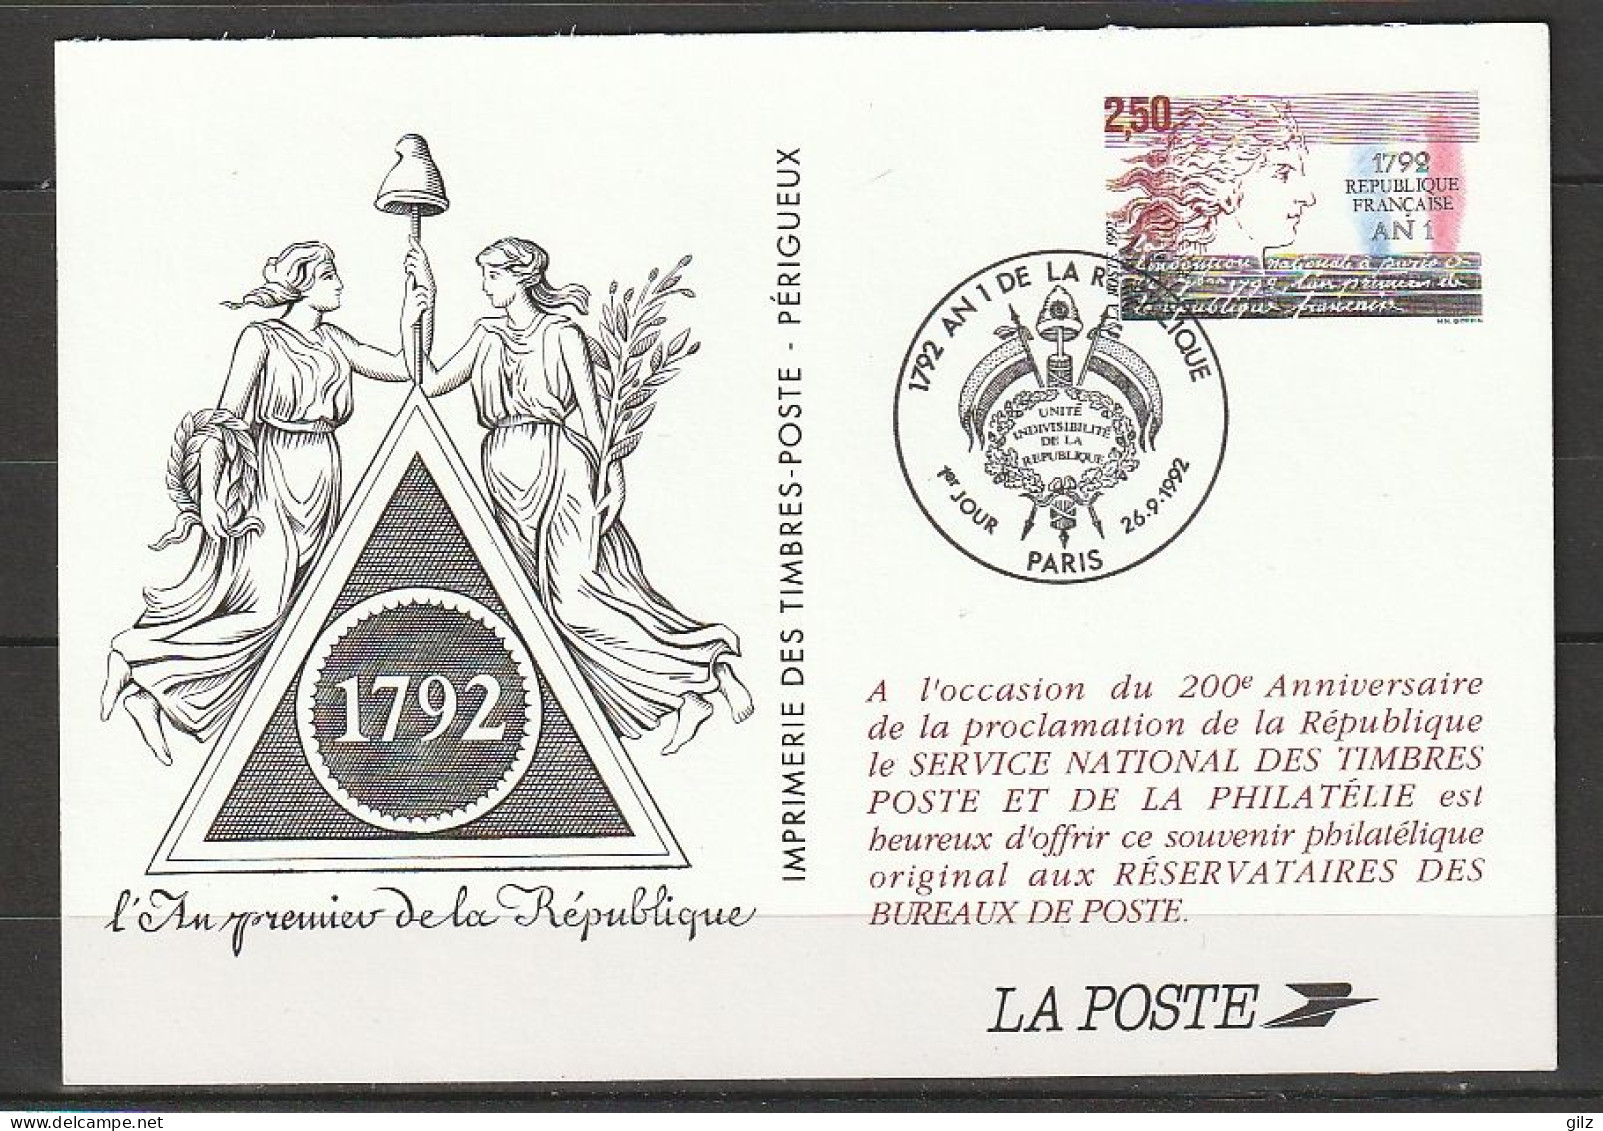 FRANCE - PSEUDO ENTIER DU N° Yt 2771 (AN 1 DE LA RÉPUBLIQUE) OBLITÉRÉ DE PARIS DU 26/9/1992 - Sonderganzsachen